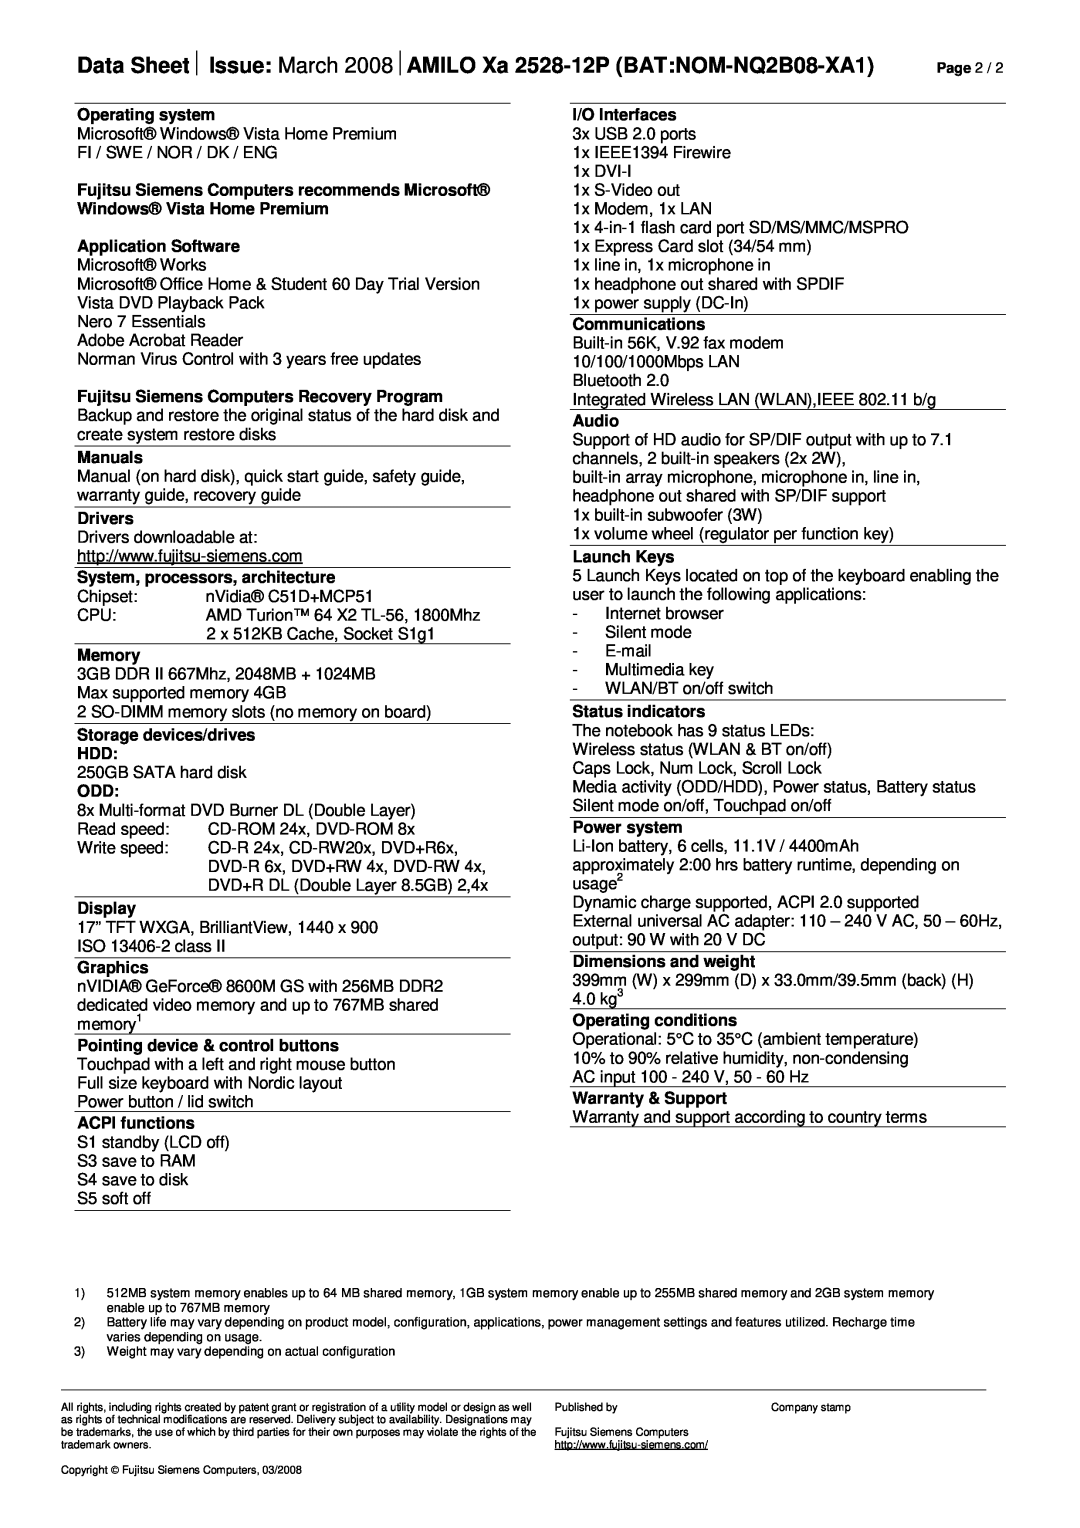 Fujitsu Siemens Computers manual Data Sheet½ Issue March 2008½AMILO Xa 2528-12P BATNOM-NQ2B08-XA1 